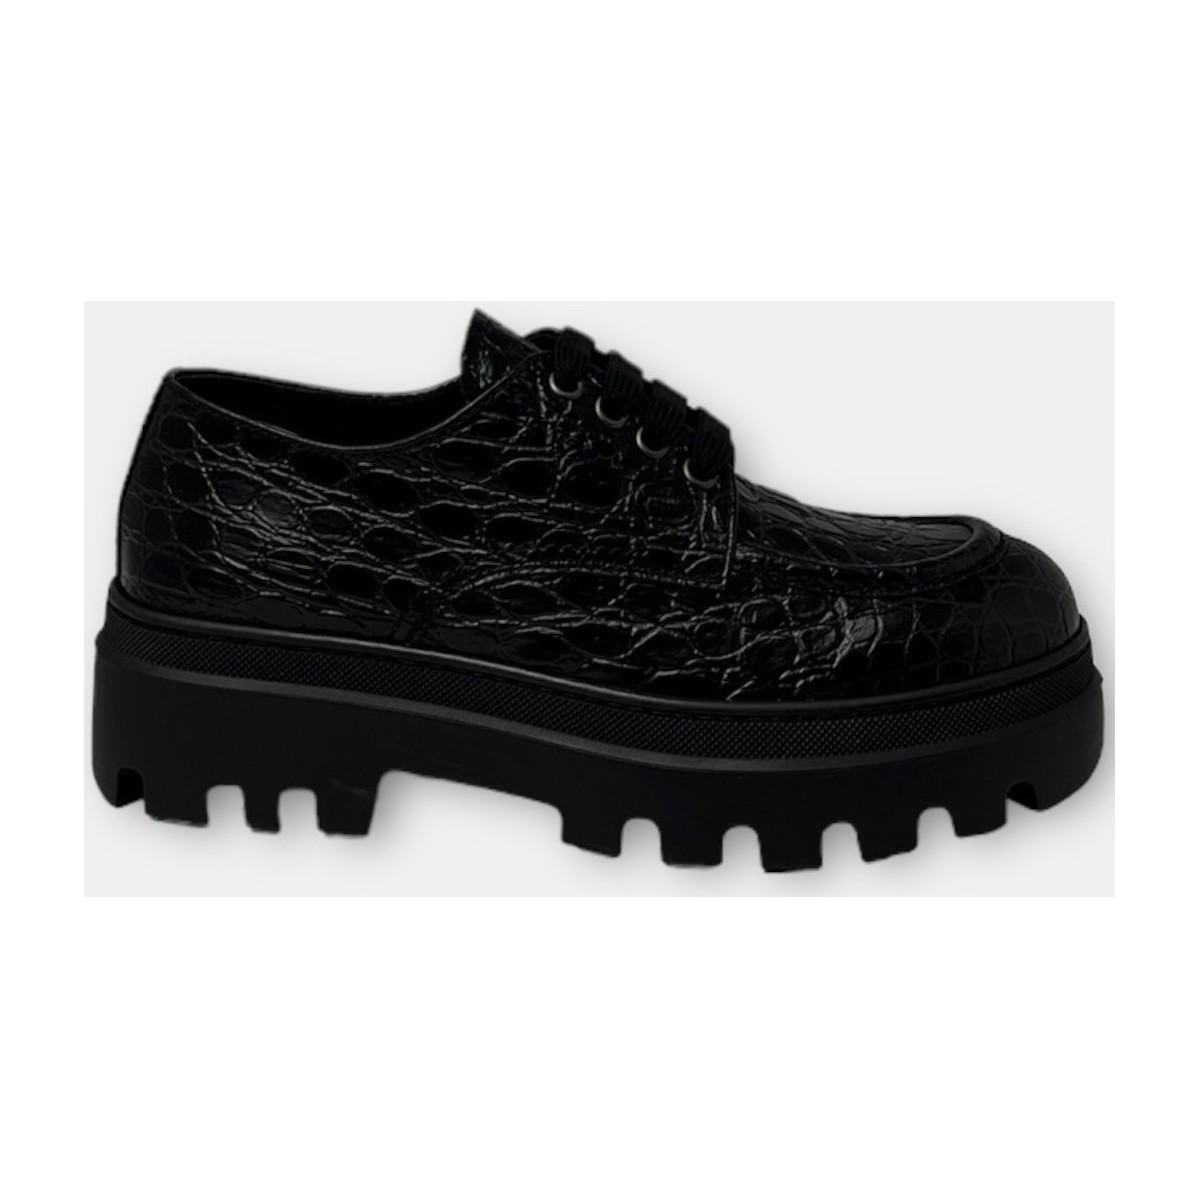 Chaussures Homme Derbies Car Shoe KDE39P1U5 F0002 Noir